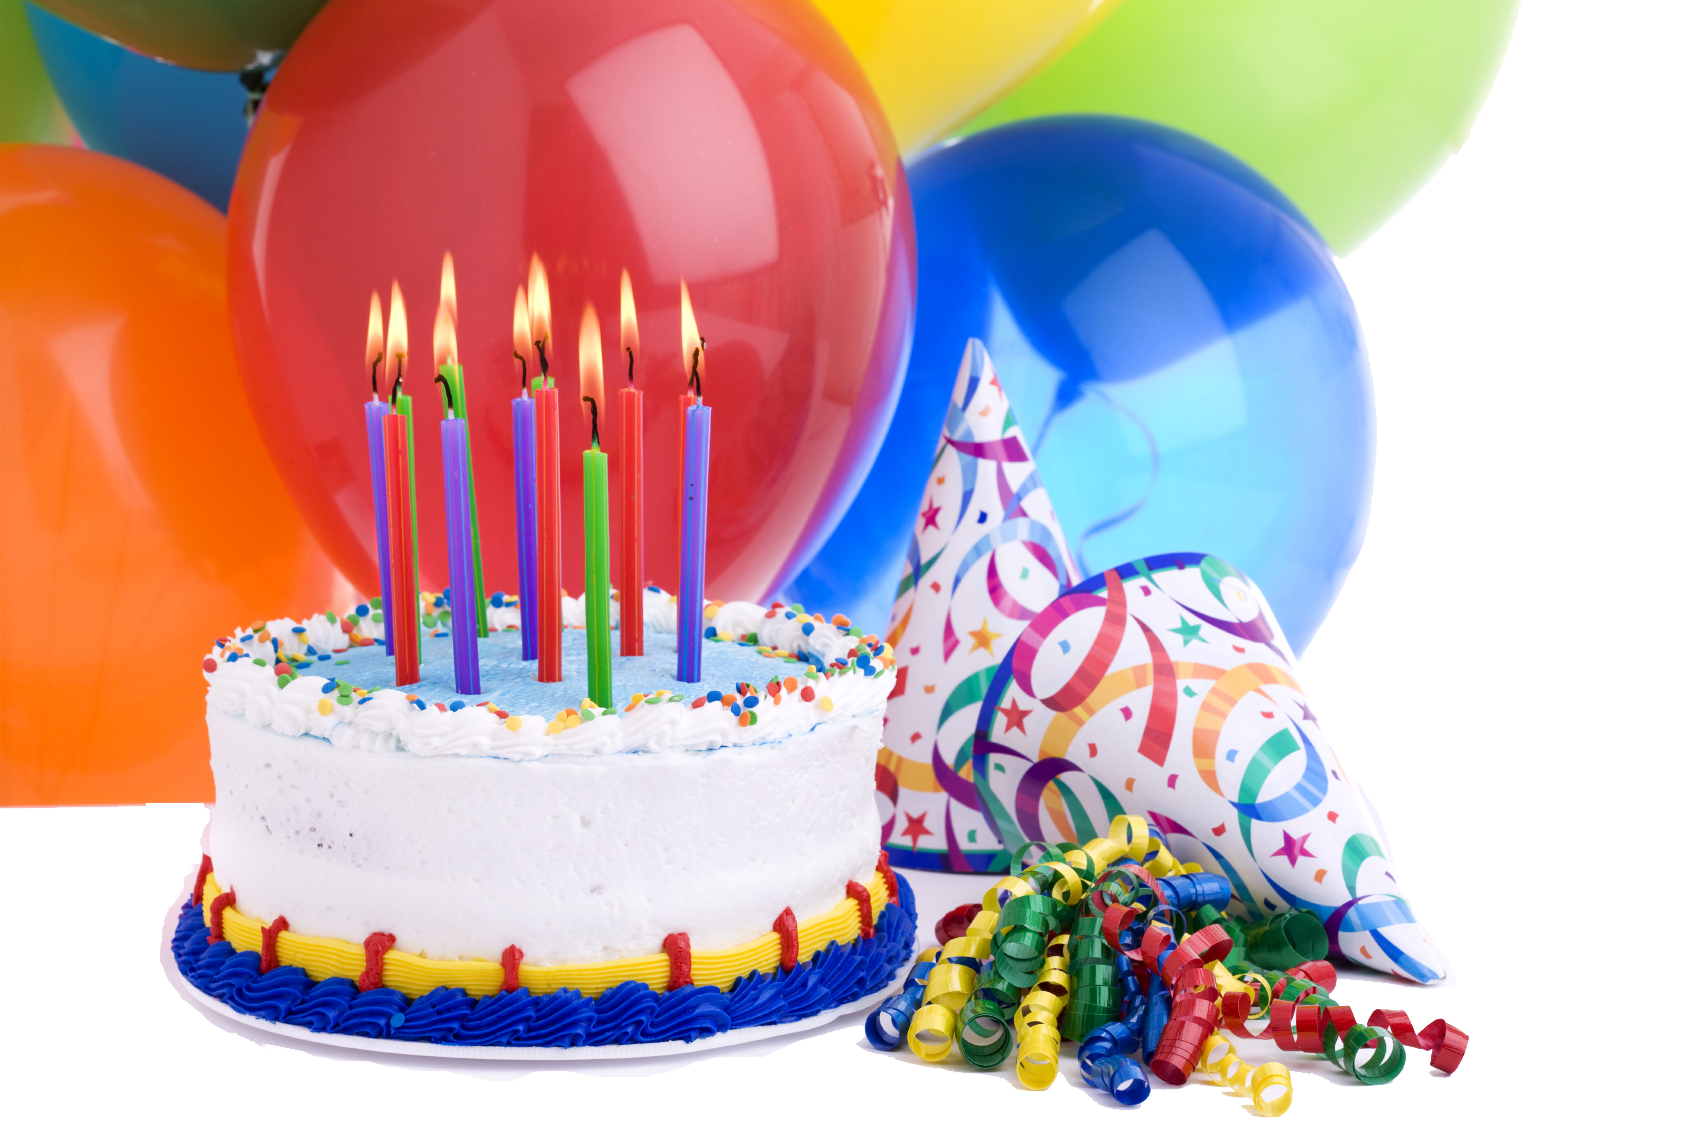 С днем рождения с тортом и шарами. Праздничный торт. С днем рождения. Шары ИТ торты с днем рождения. С днём рождения тортик и шарики.